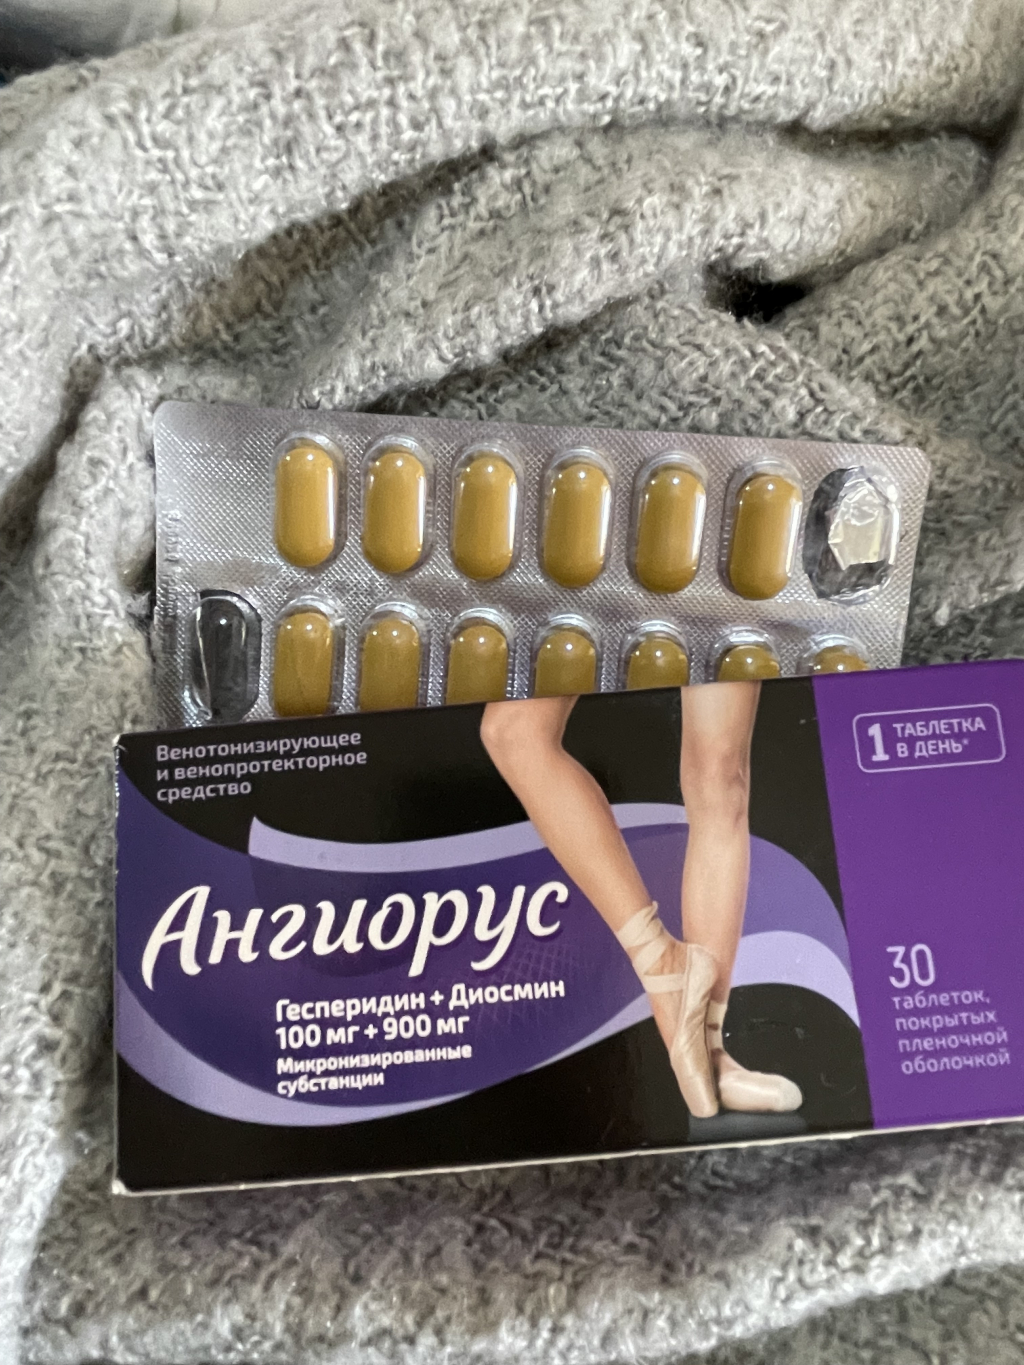 Ангиорус - Остановилась на таблетках и мне предложили Ангиорус в дозировке 1000 мг.